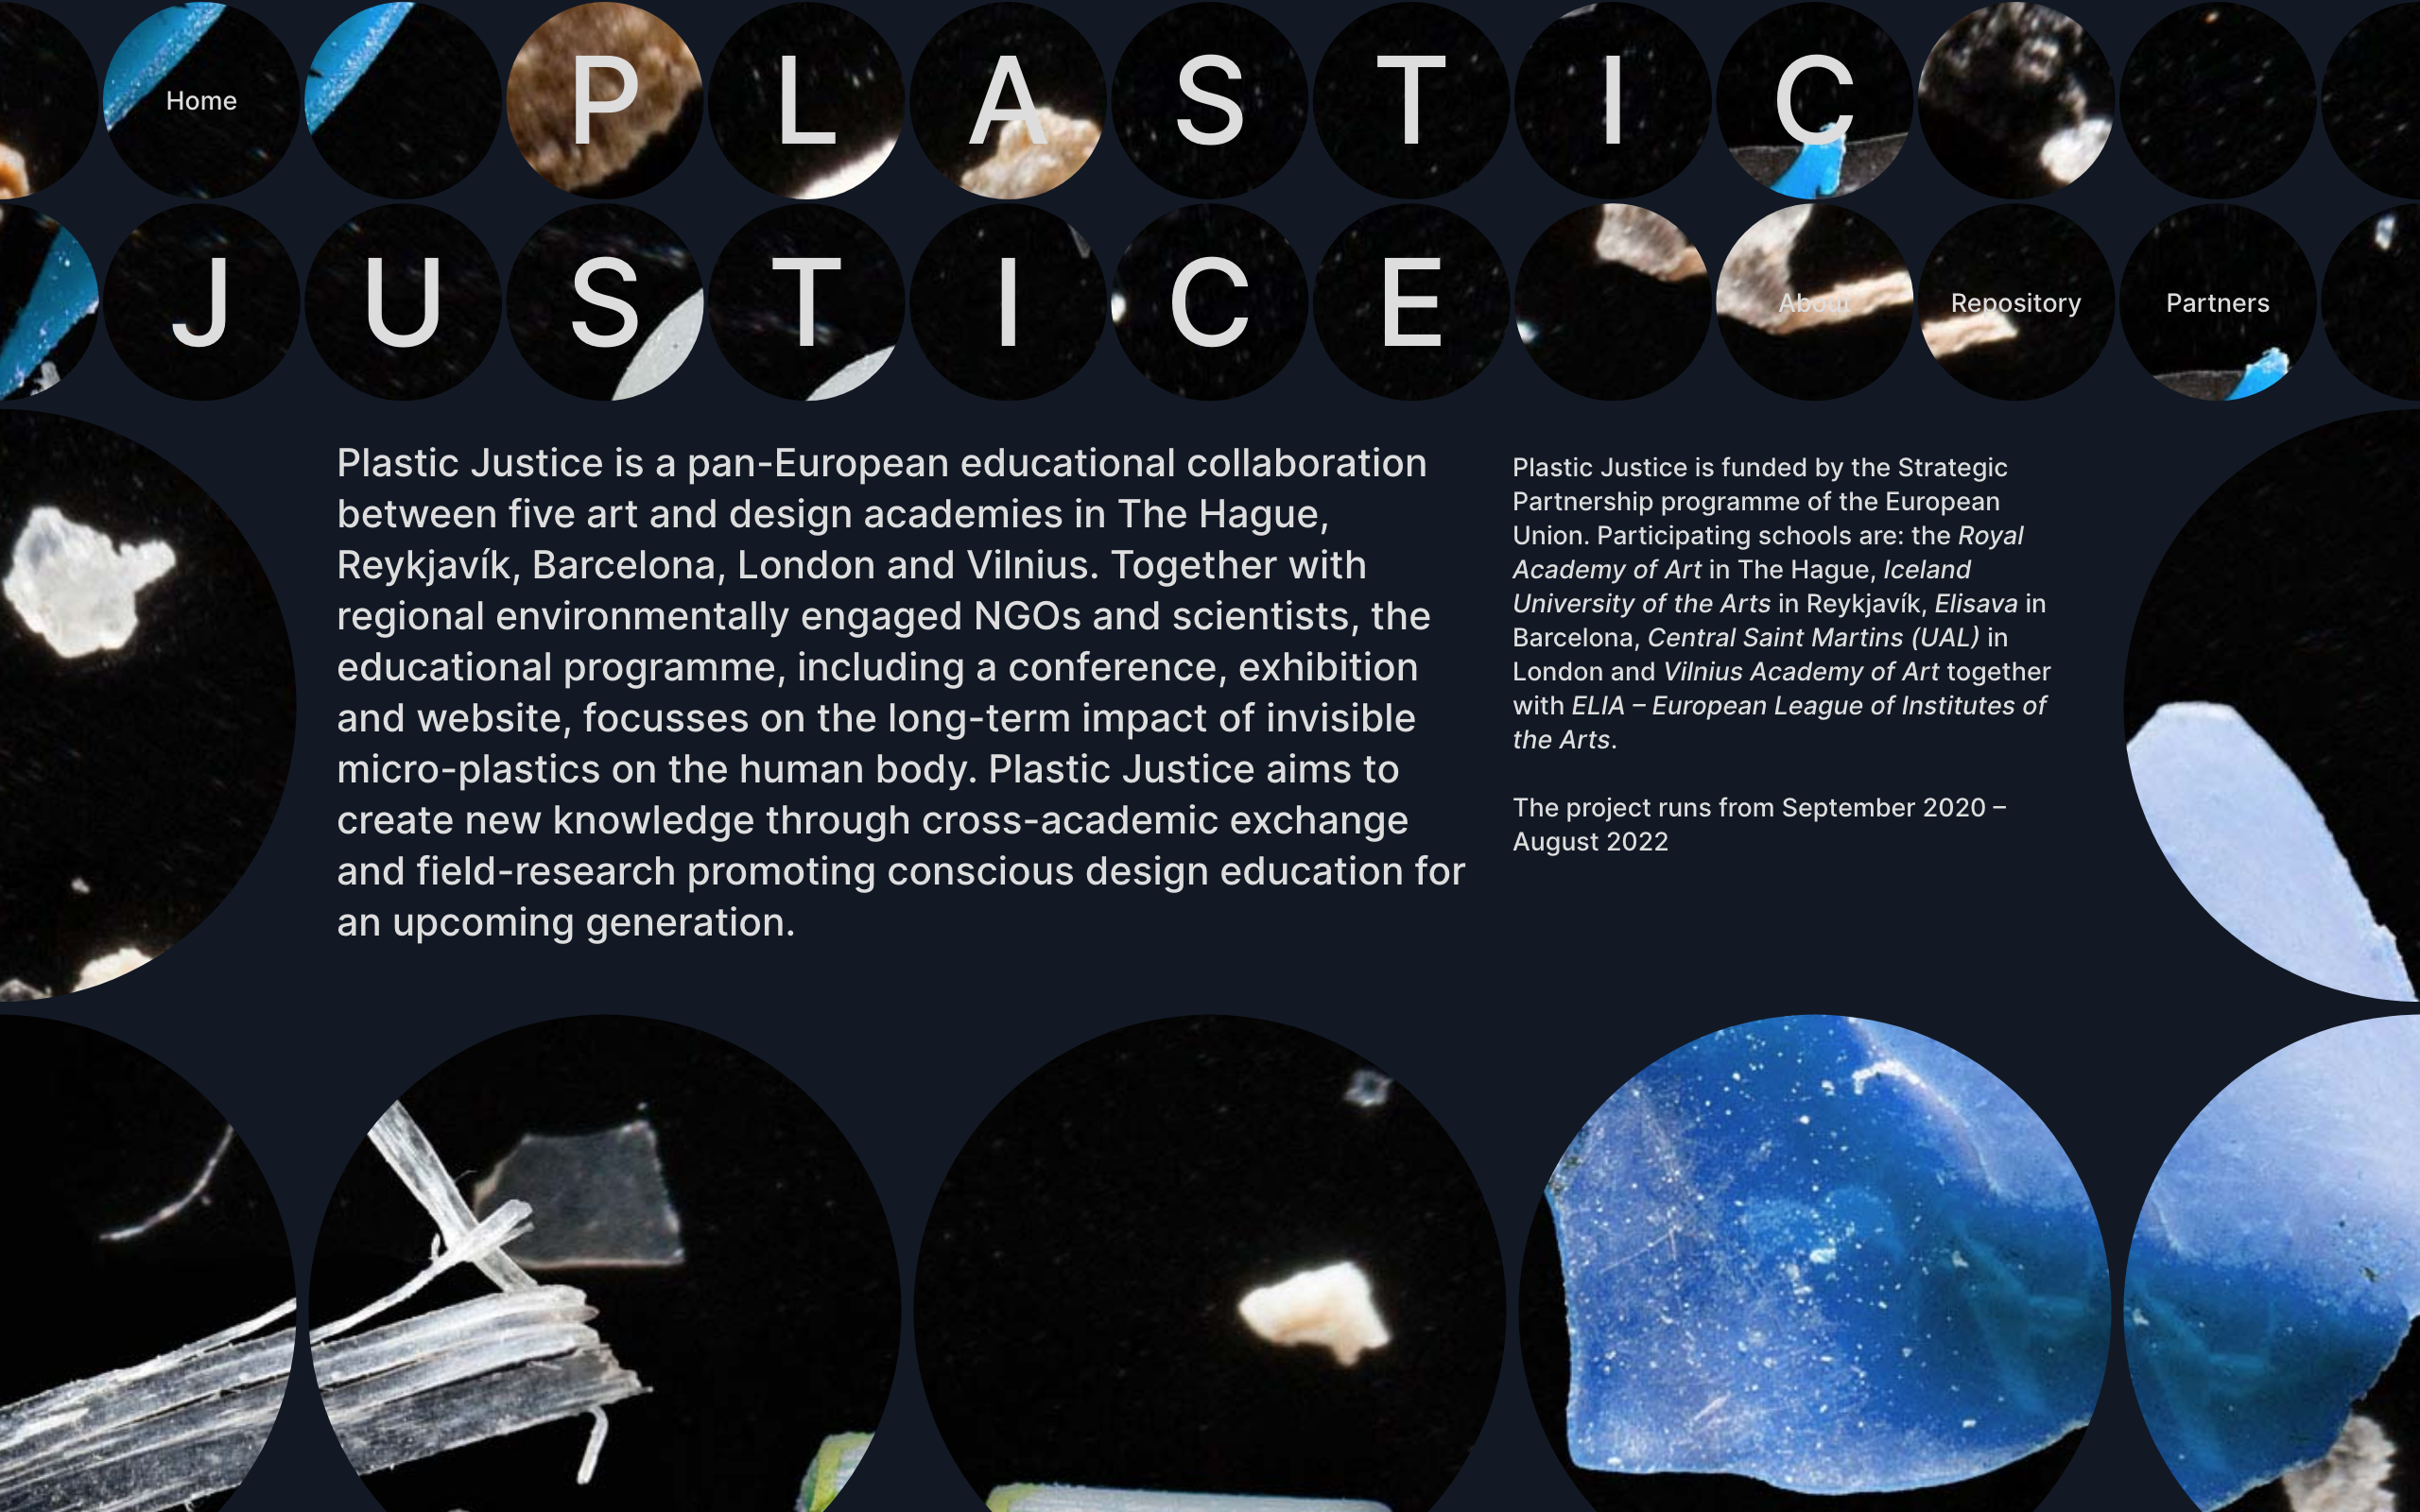 Plastic justice